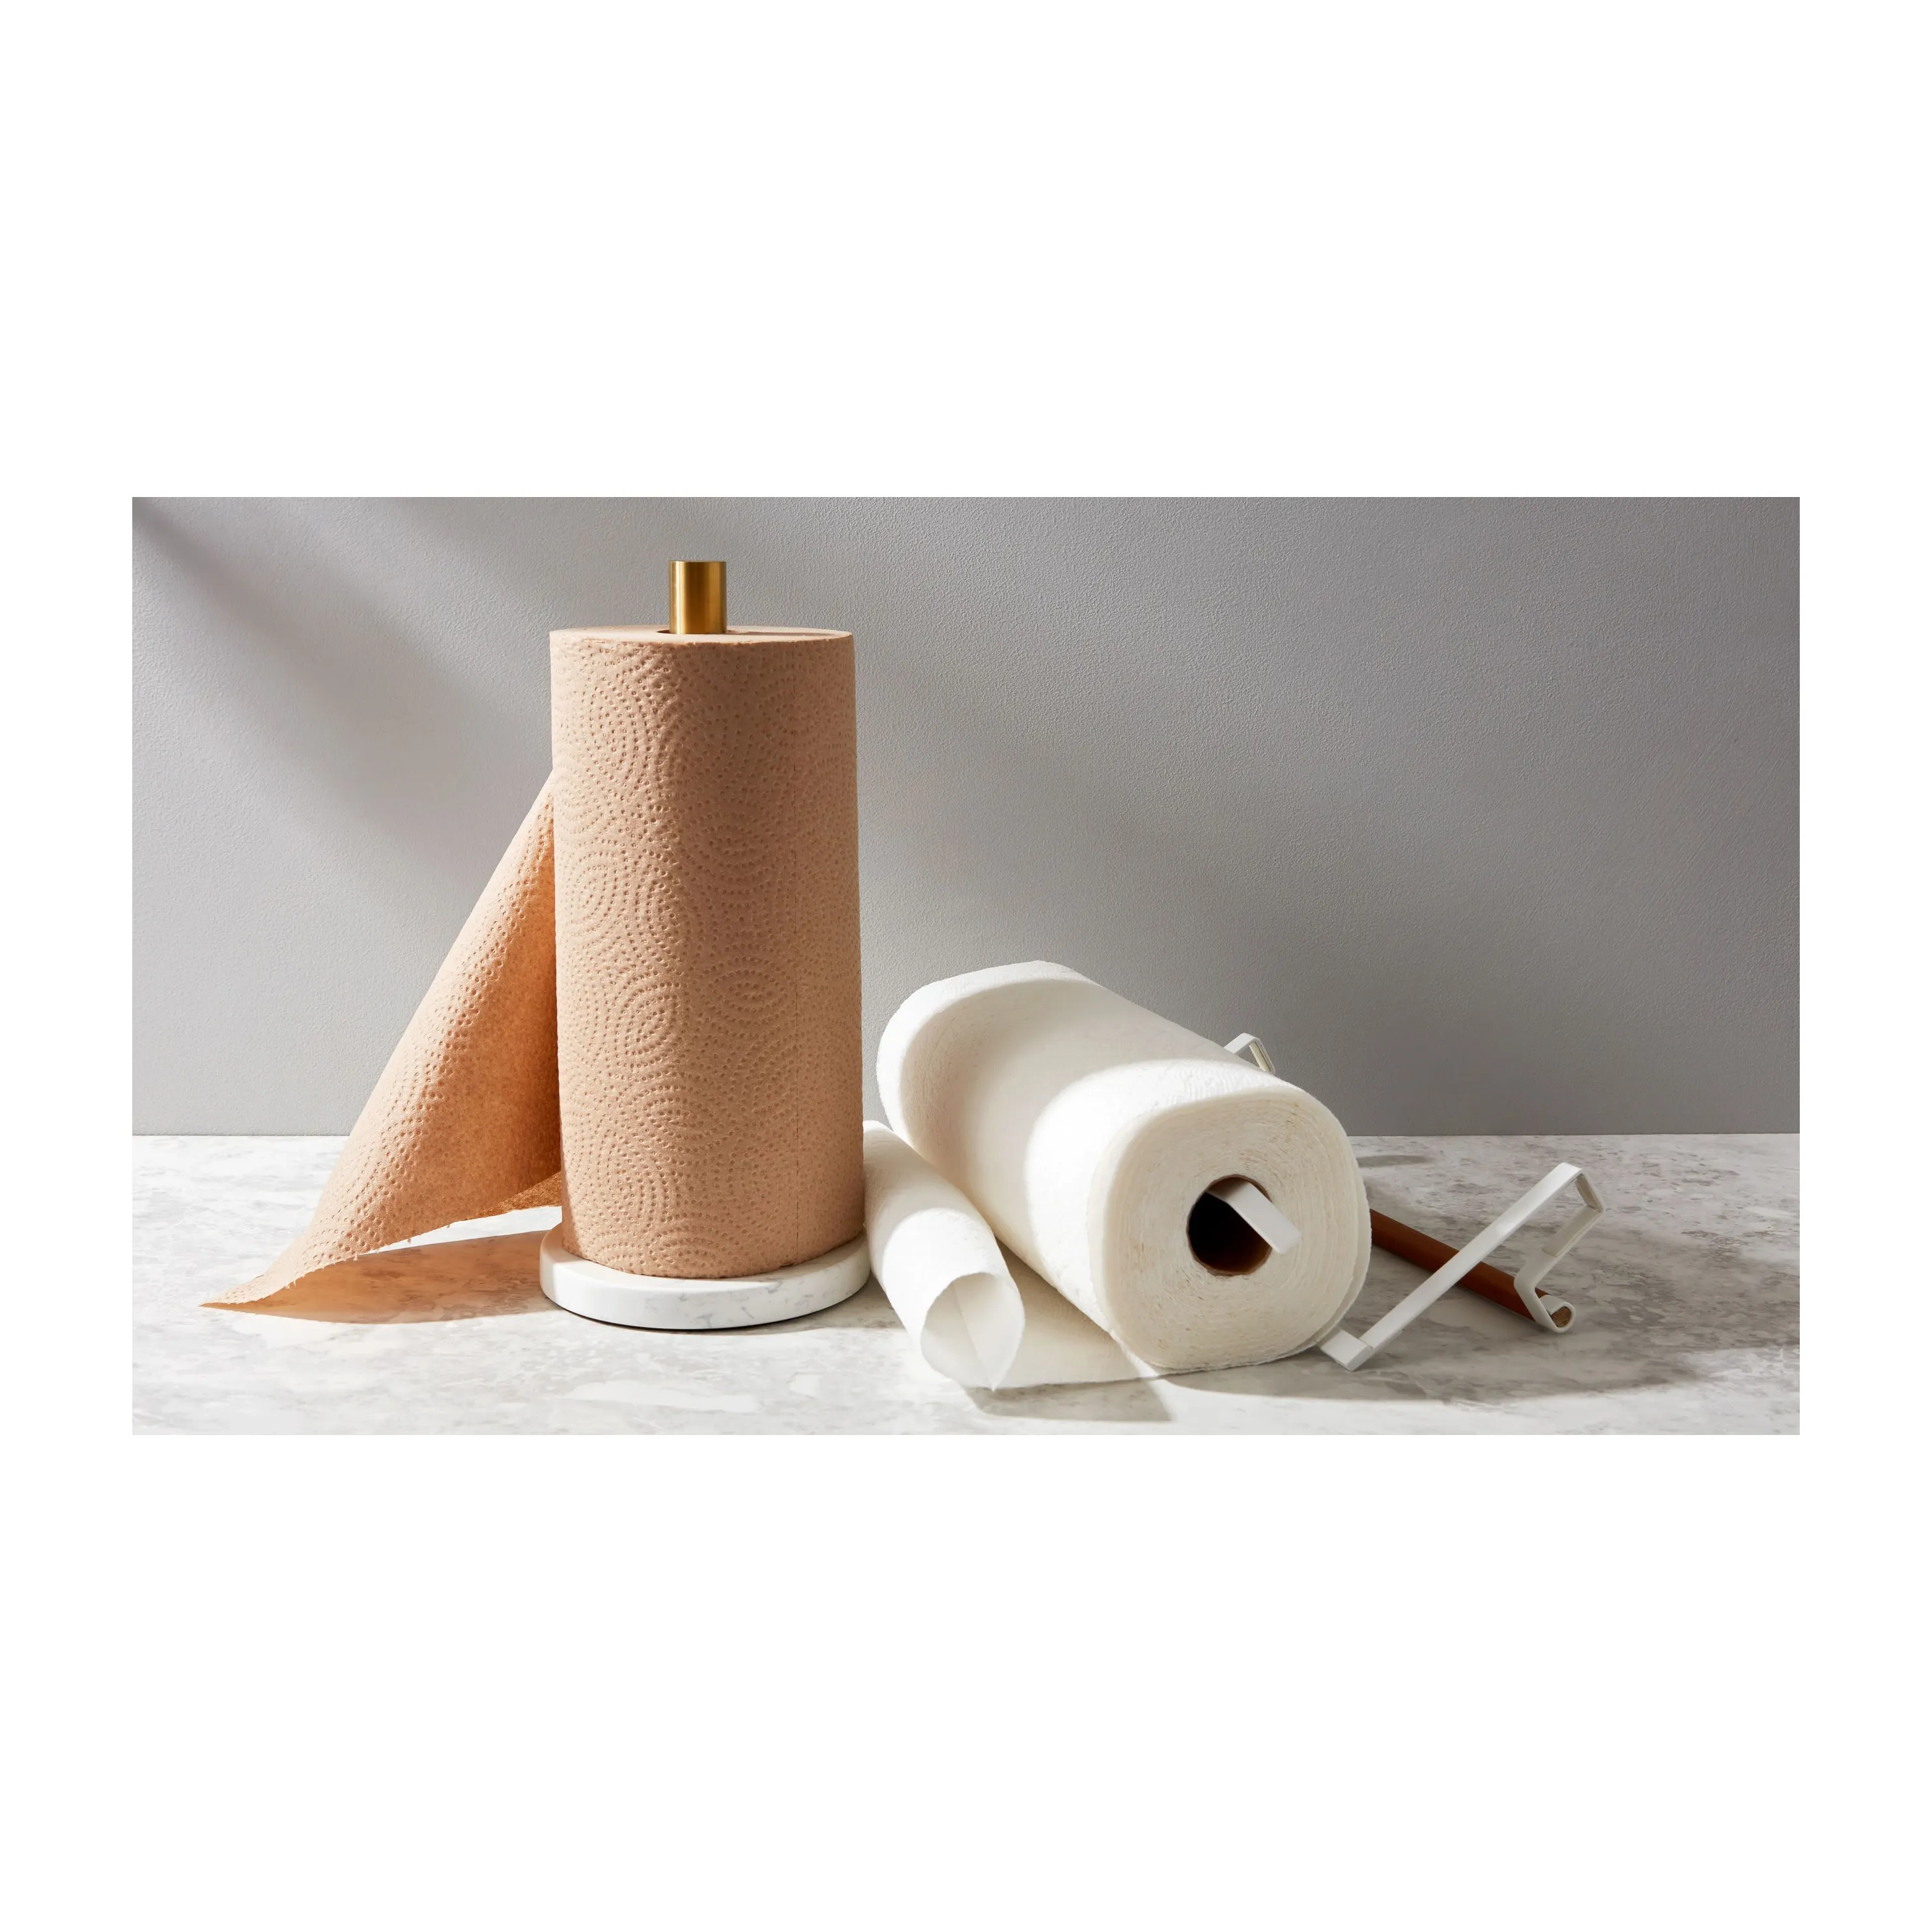 Üretici olmayan dokuma mutfak kağıt havlu rulosu ile güzel desen özelleştirilmiş hamuru toptan kağıt havlu rulo banyo tuvalet kağıdı